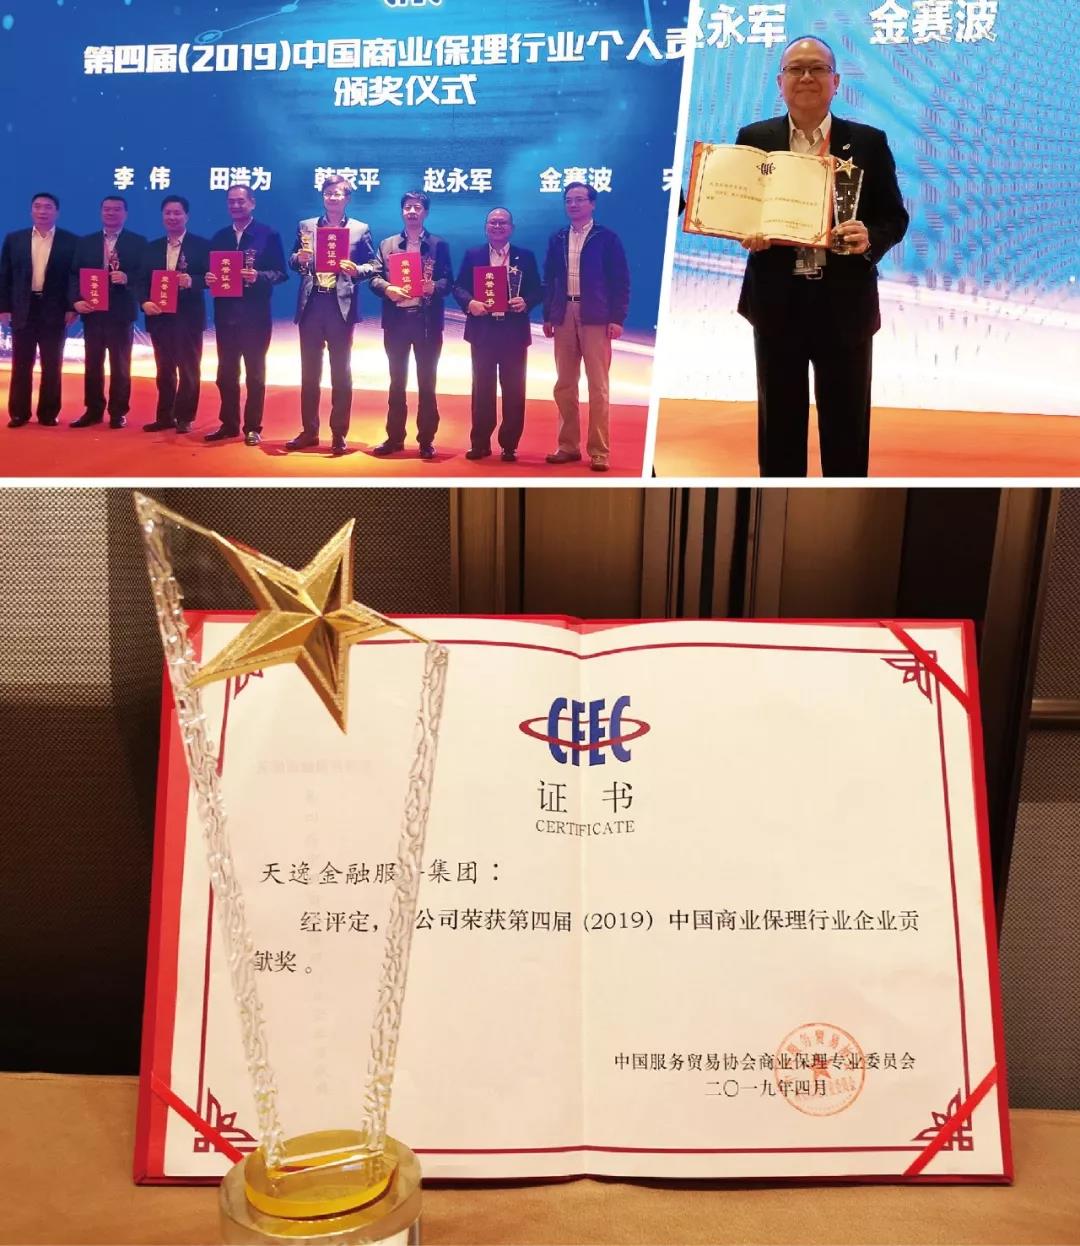 熱烈祝賀天逸榮獲第四屆中國商業保理行業“企業貢獻獎”、 聚螢金鏈平臺榮獲“創新案例獎”